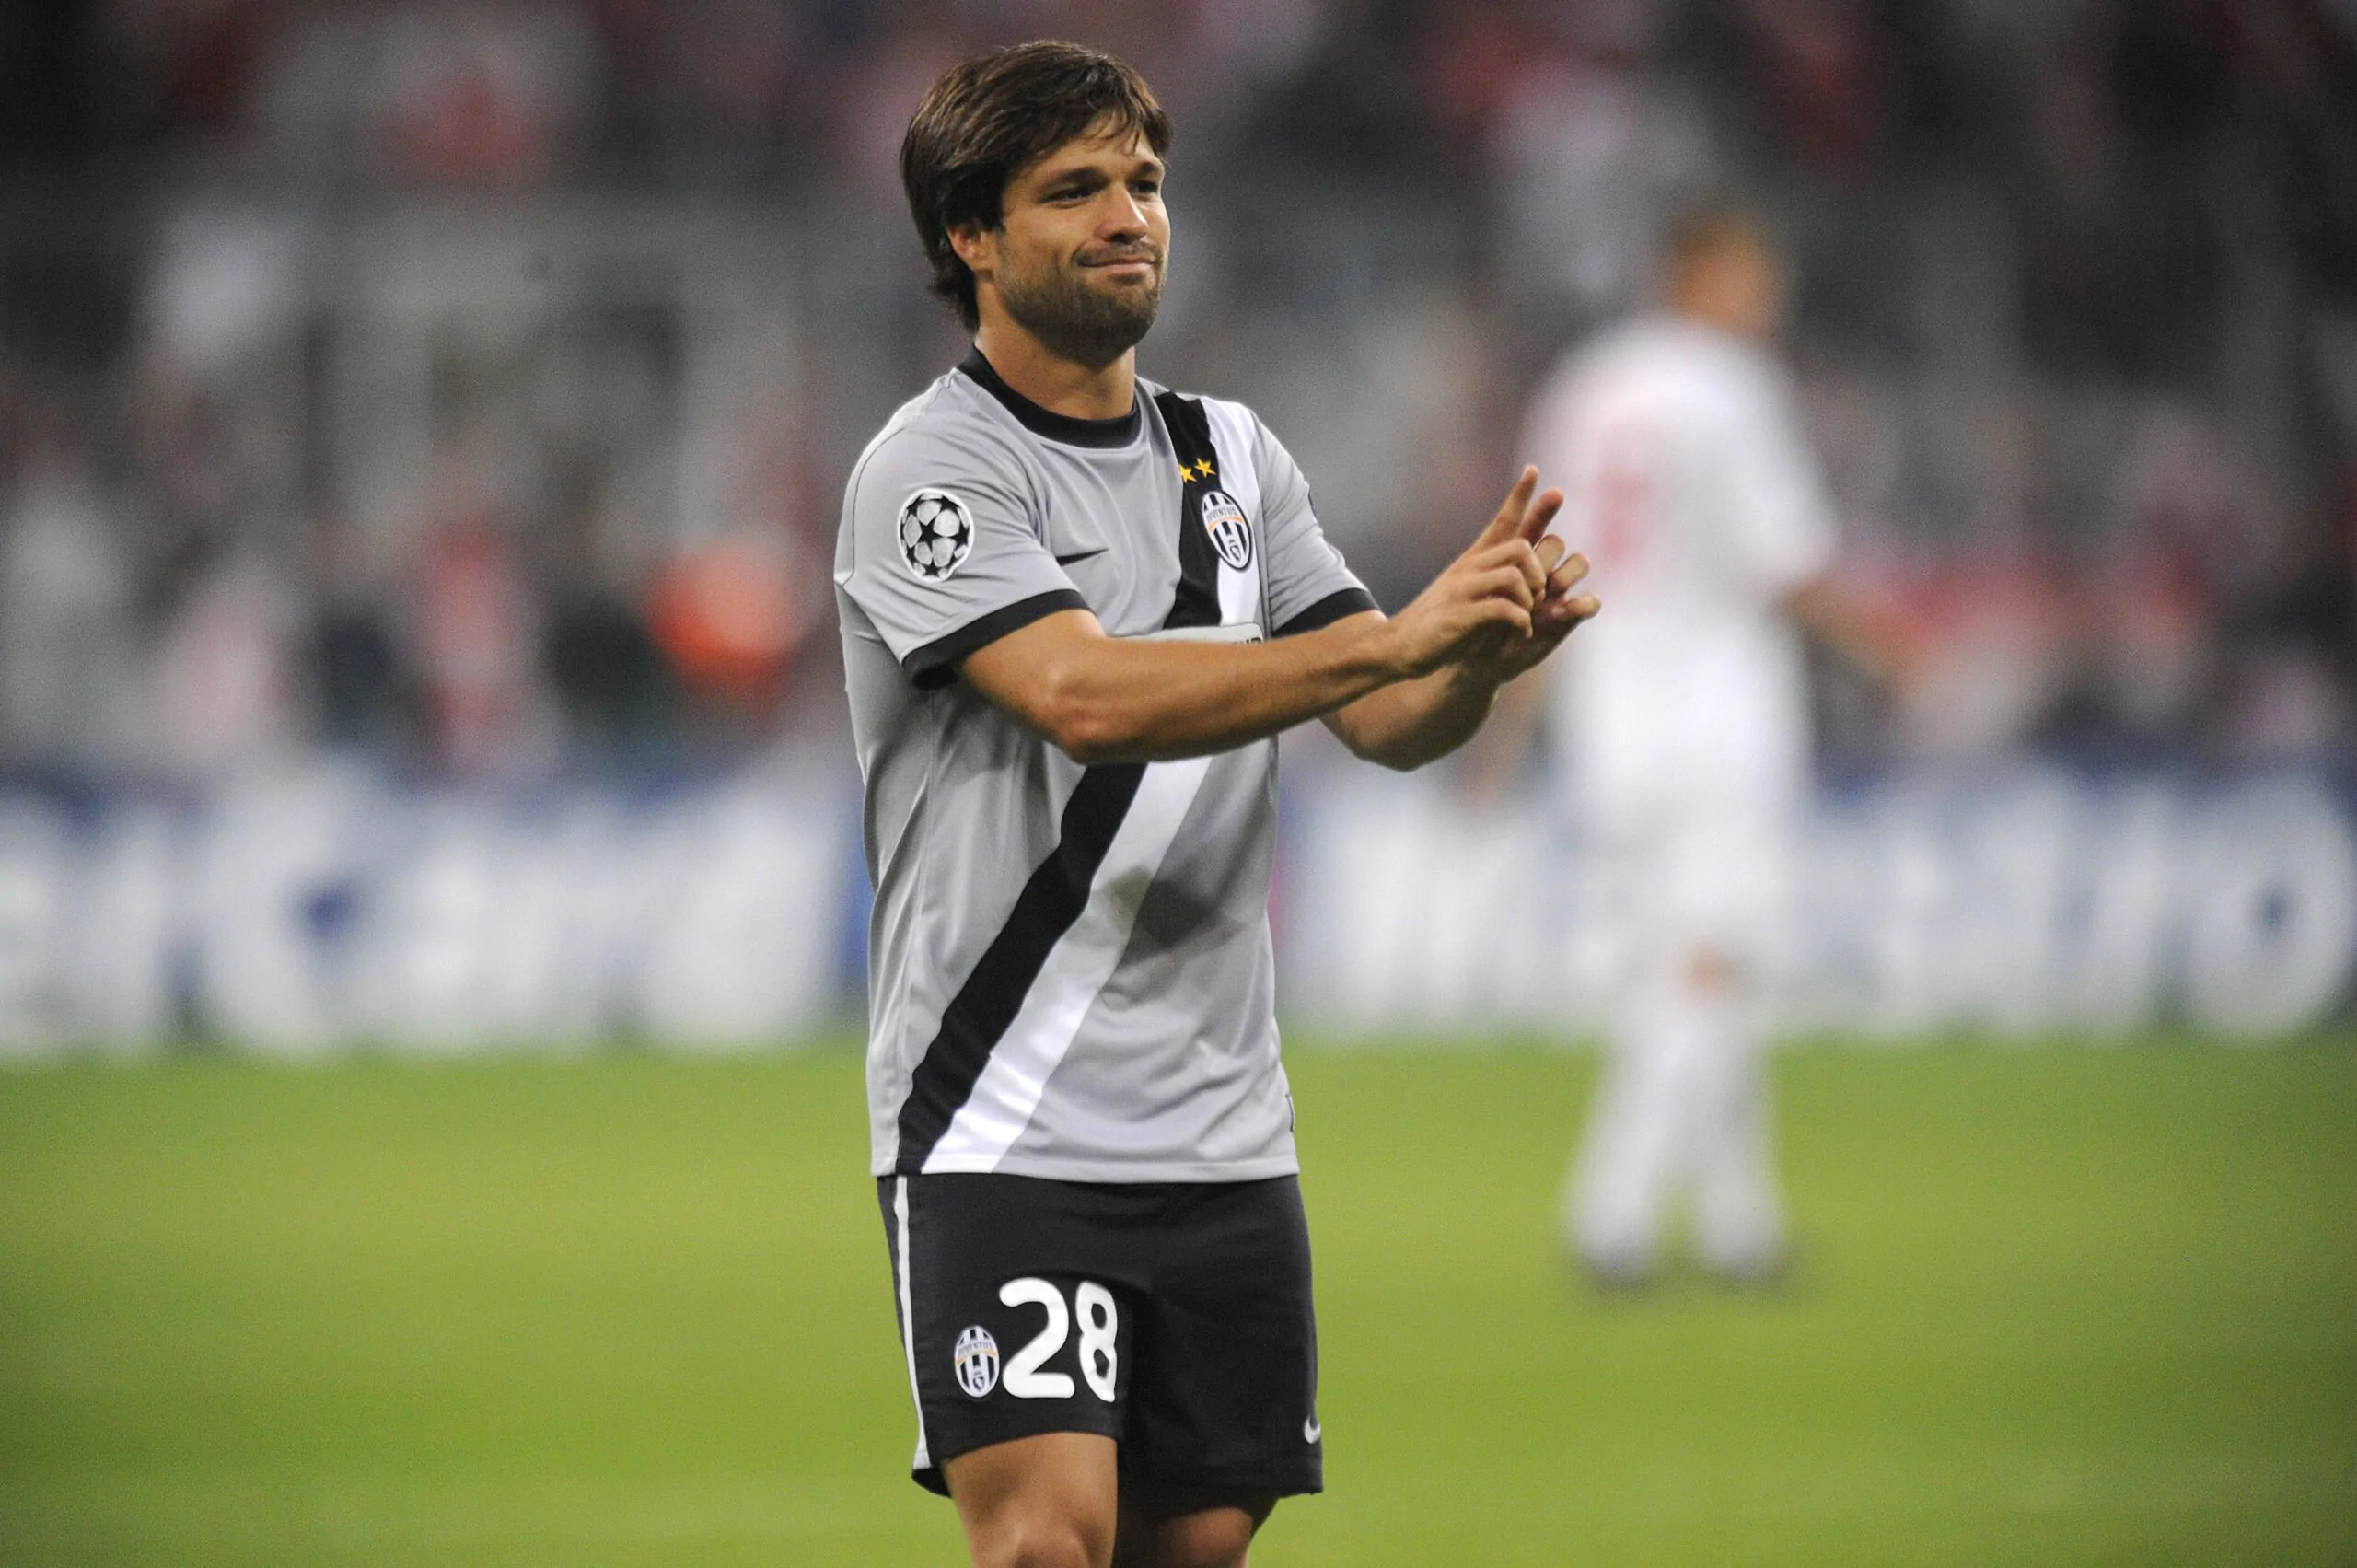 Diego torna sulla sua esperienza alla Juve: “Non è mai scattata la scintilla”